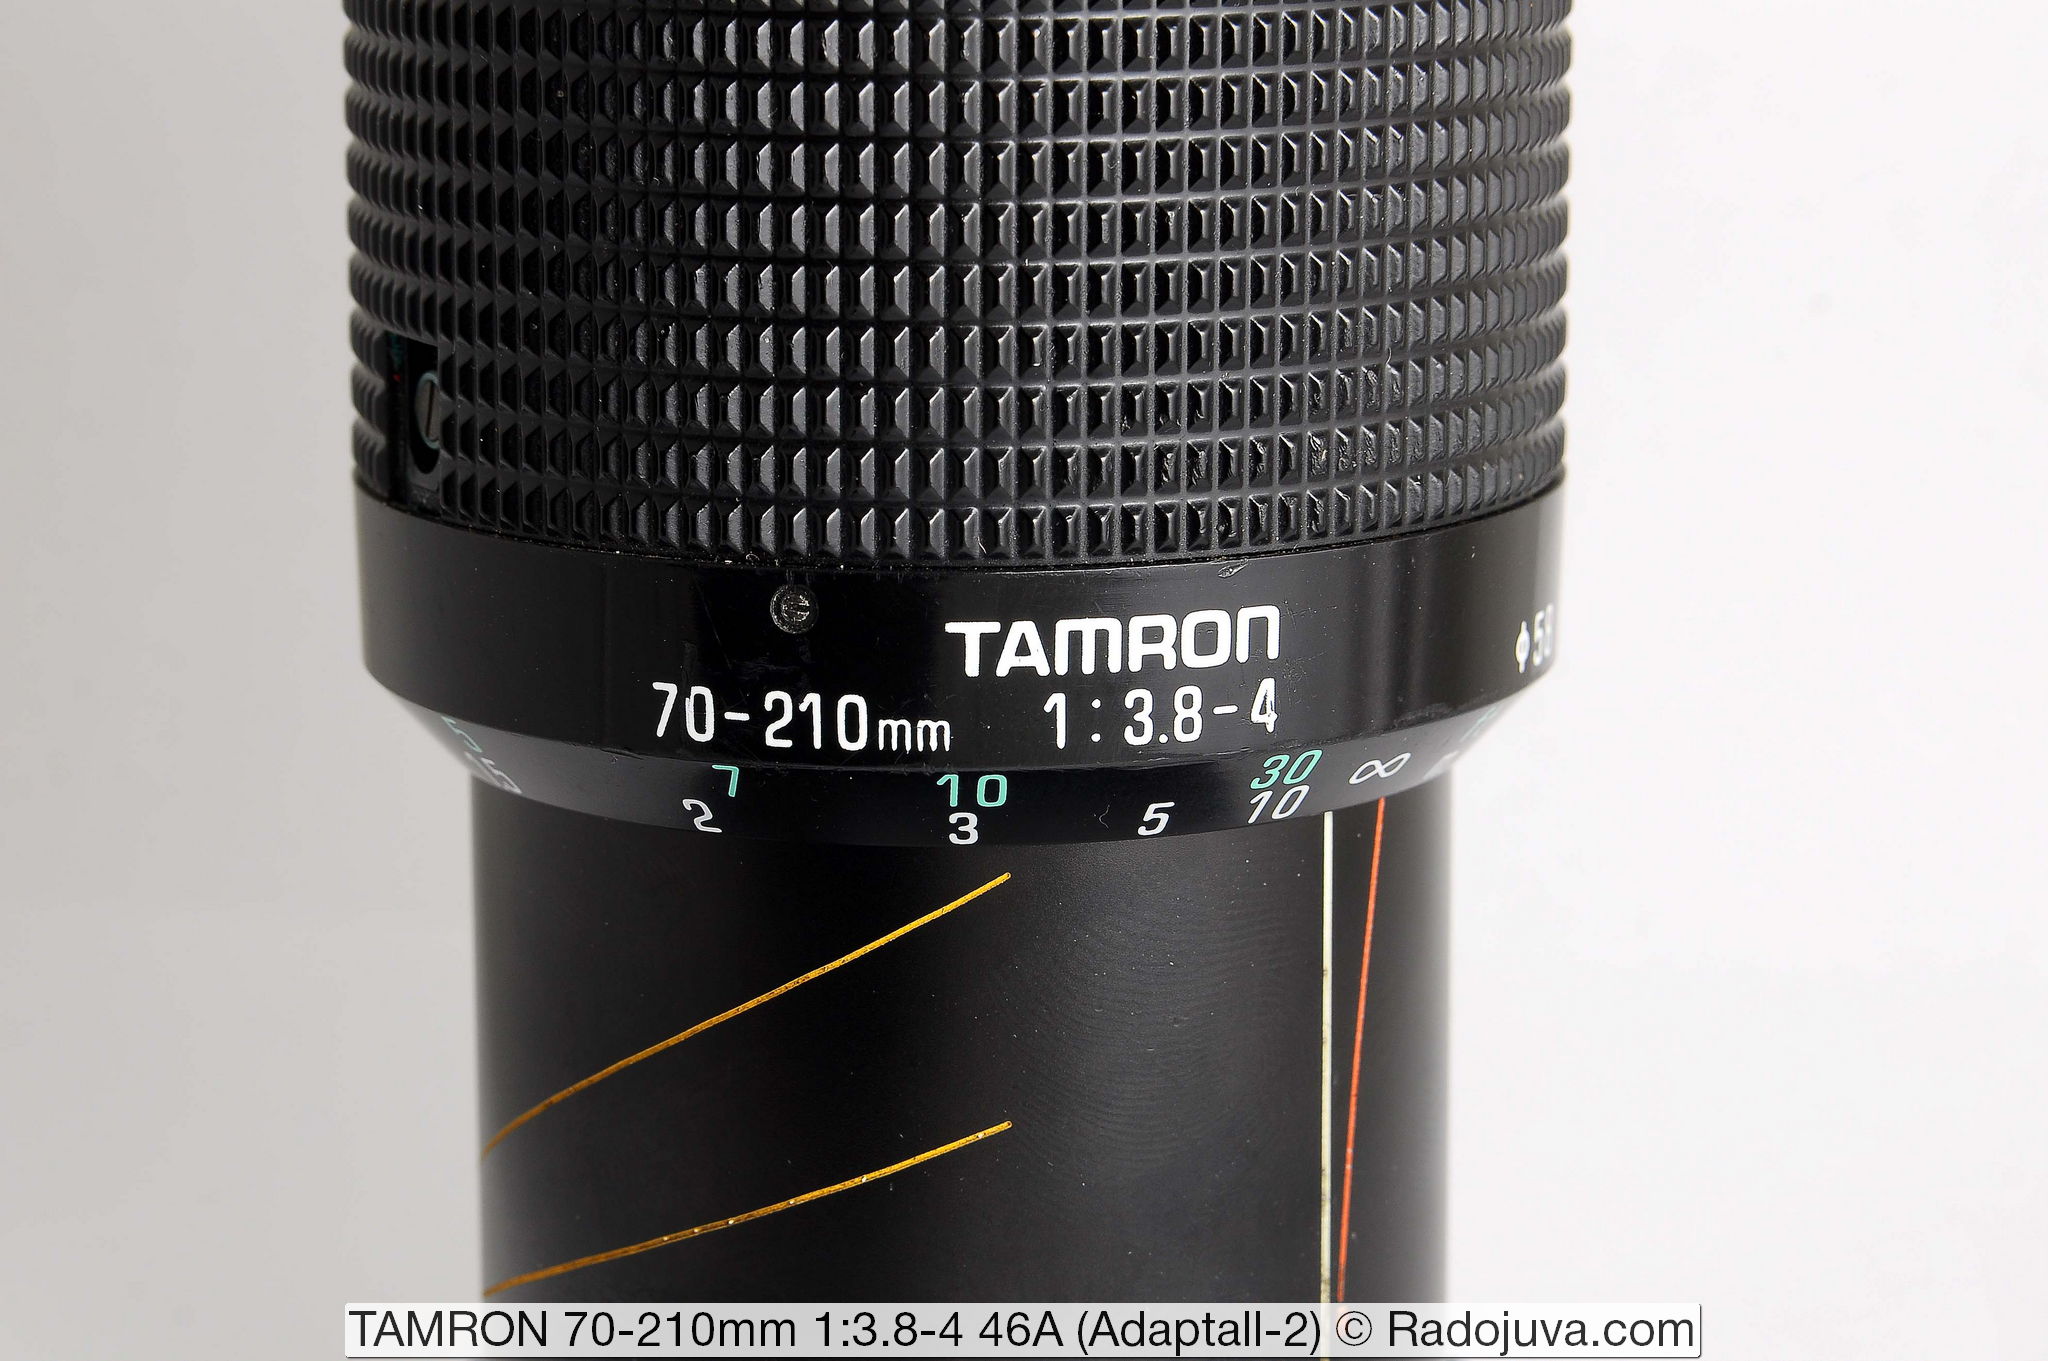 TAMRON 70-210mm 1: 3.8-4 46A (Adaptall-2)